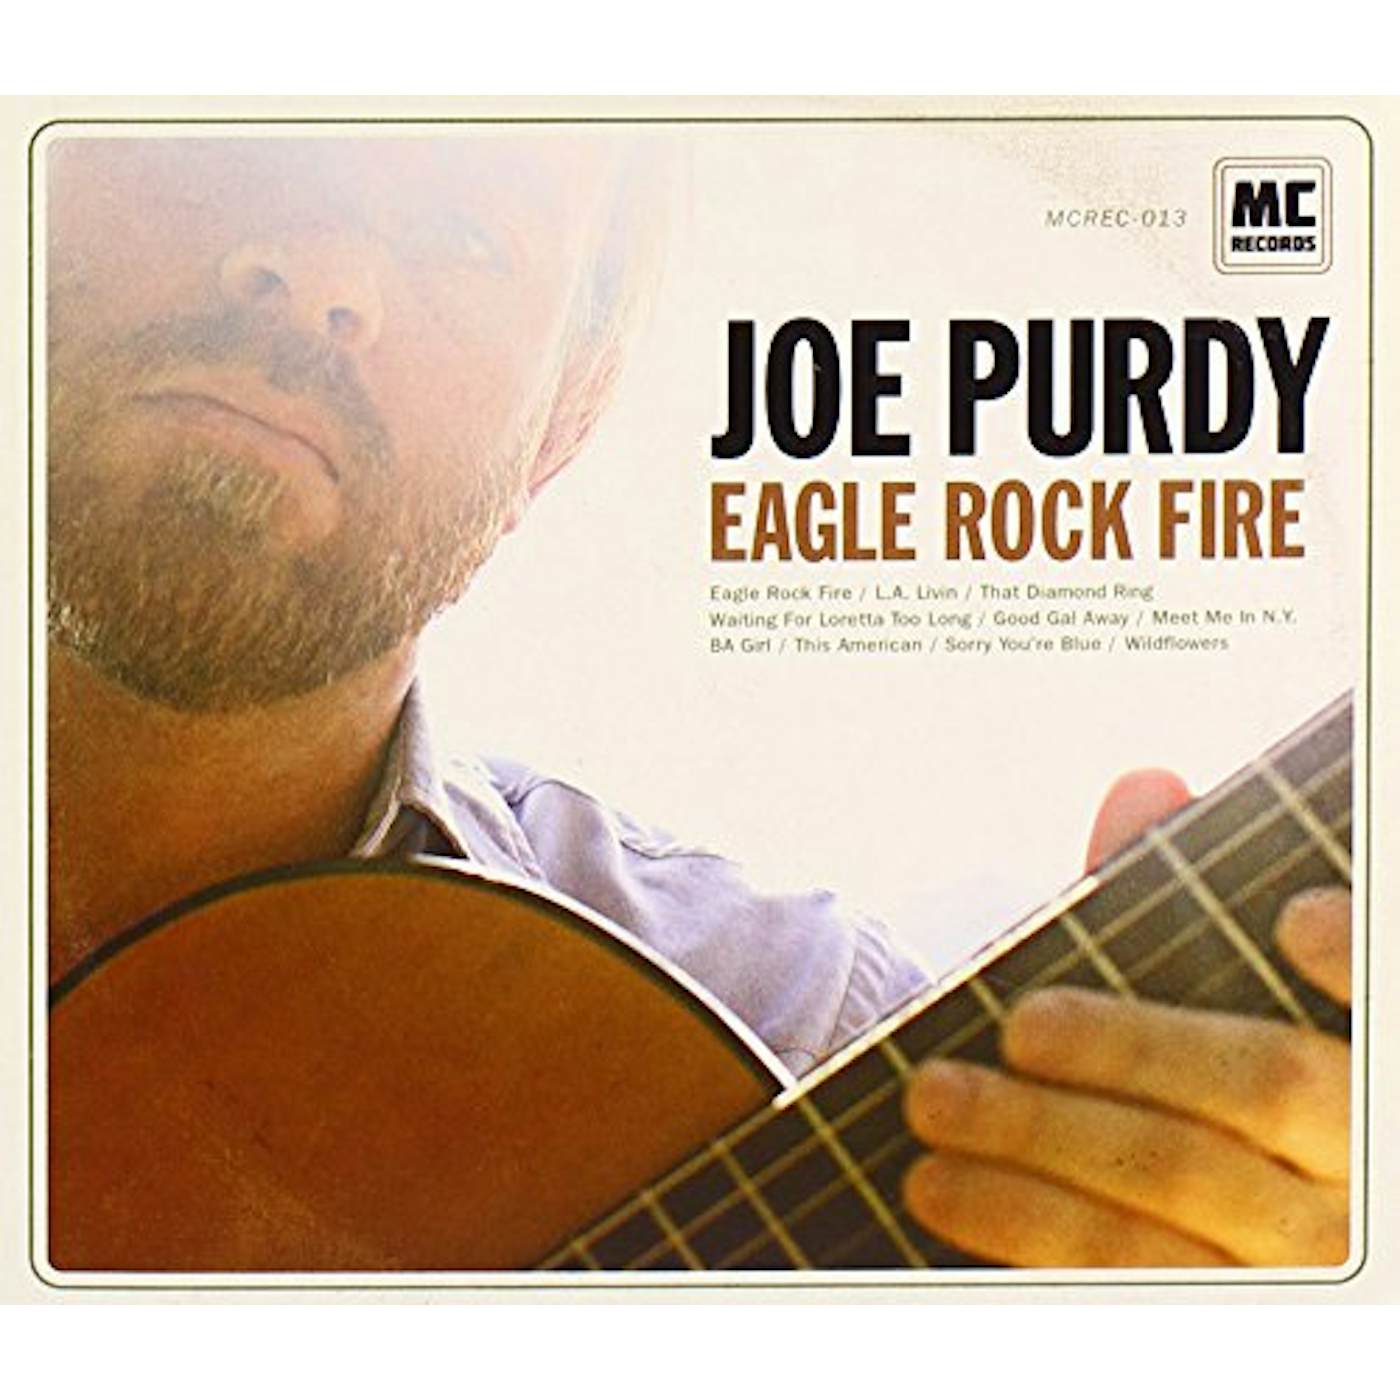 Joe Purdy EAGLE ROCK FIRE CD